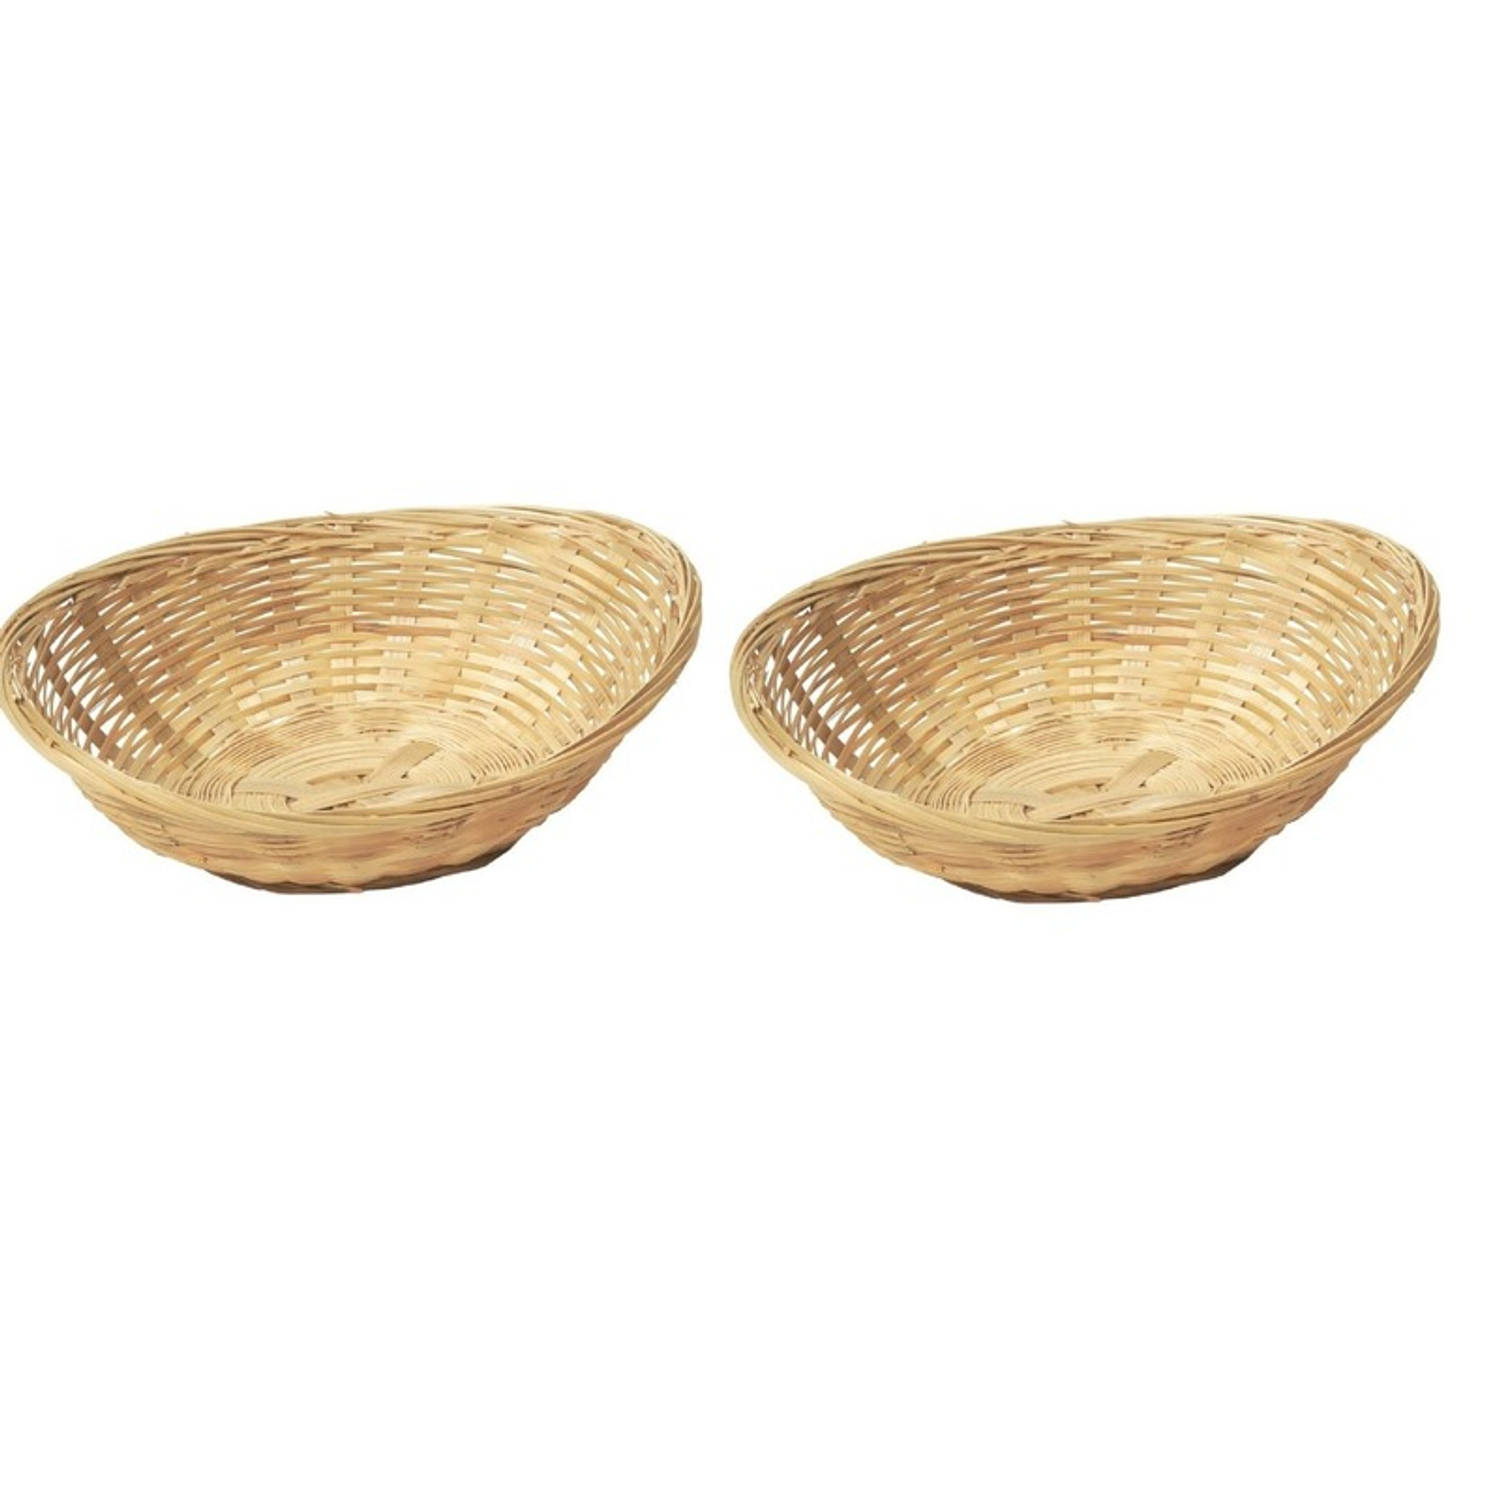 2x Ovale Rieten-bamboe Mand-schaal 22 X 17 X 7 Cm Keuken Artikelen Fruitschalen-manden Huis Decorati